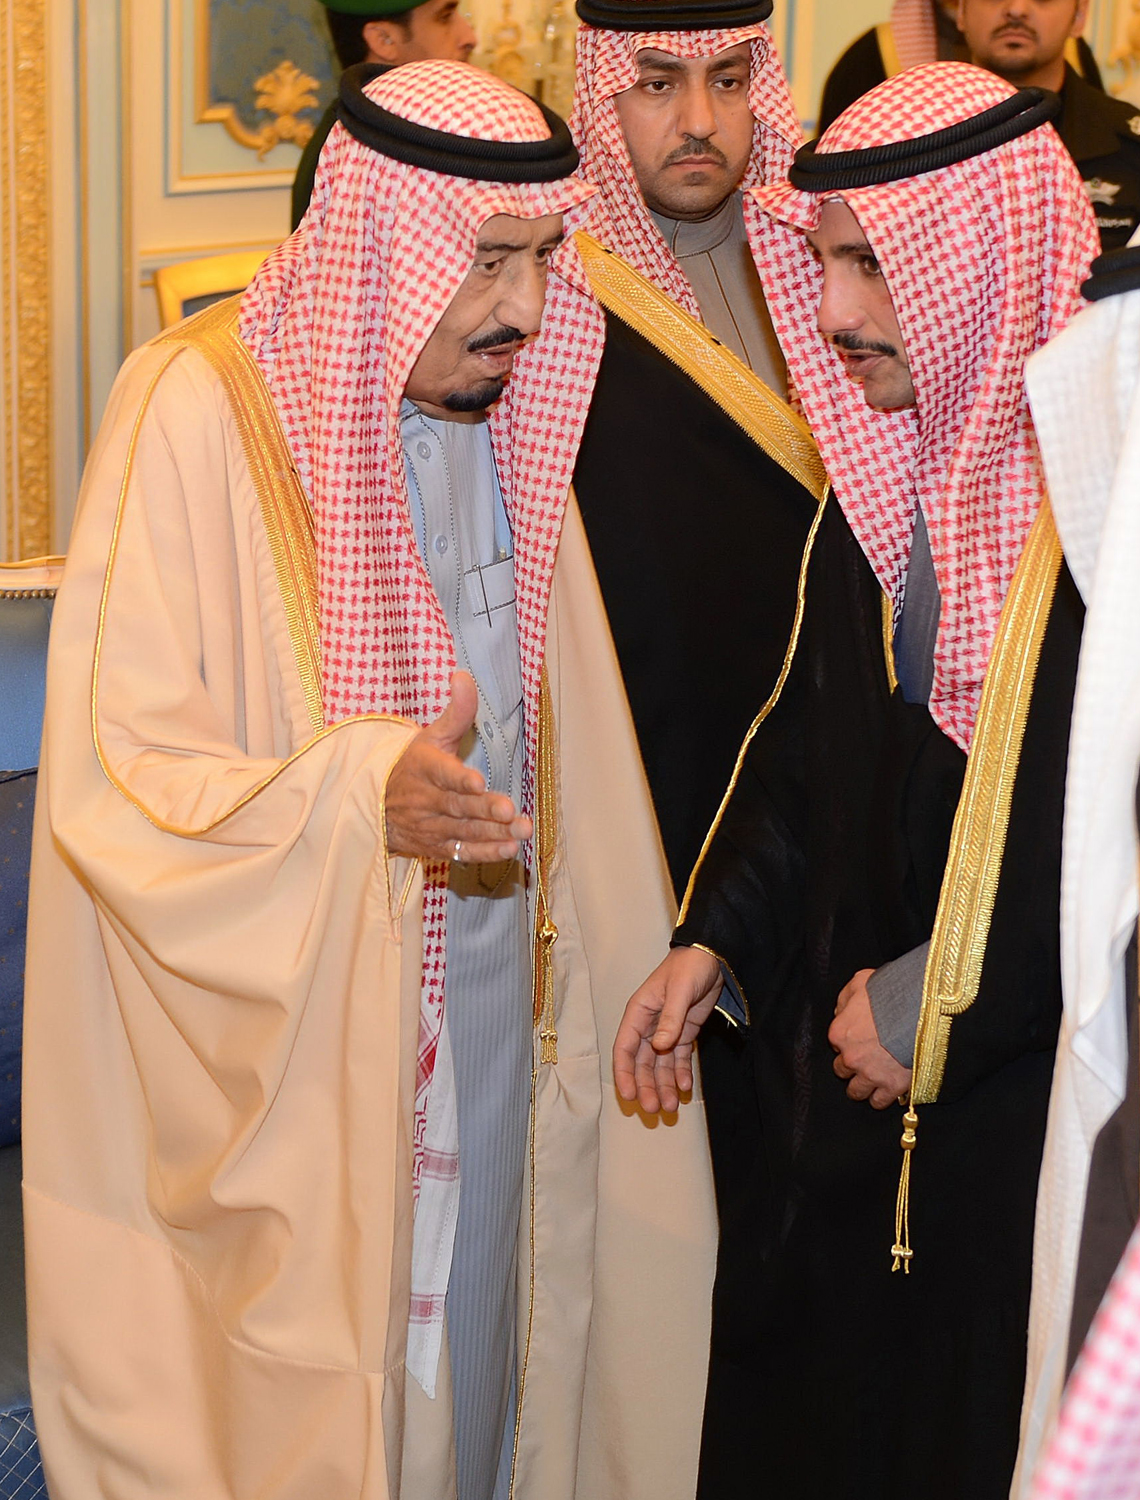 رئيس مجلس الامة مرزوق علي الغانم يتقدم بواجب العزاء لخادم الحرمين الشريفين الملك سلمان بن عبدالعزيز ال سعود